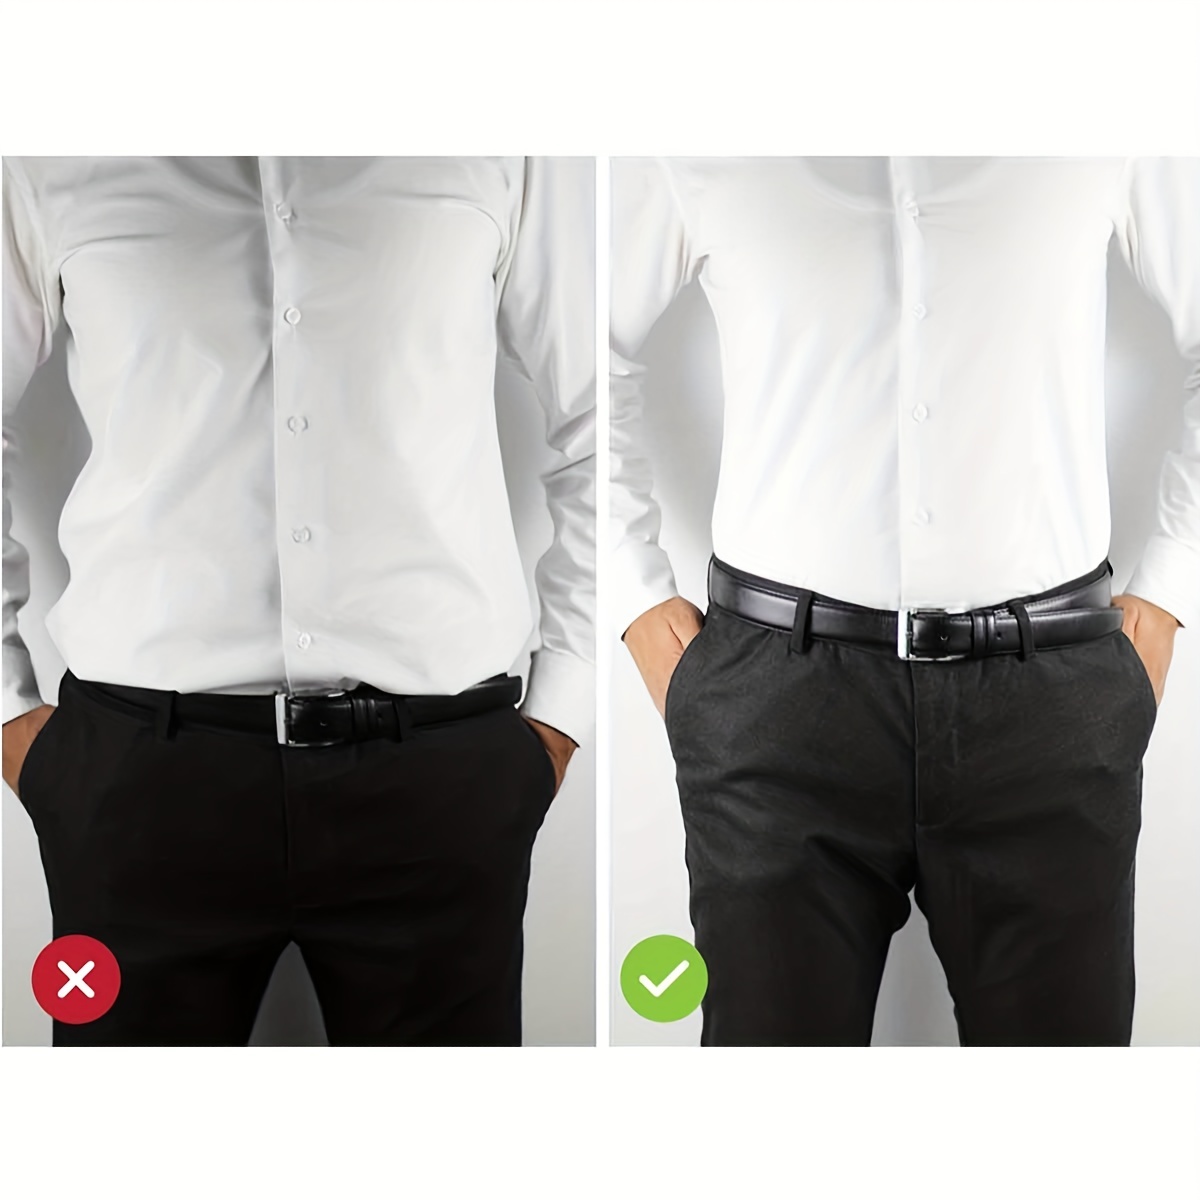 Y-shaped Suspender Belt Adjustable Strap Shirt Holder Non-Slip For Men